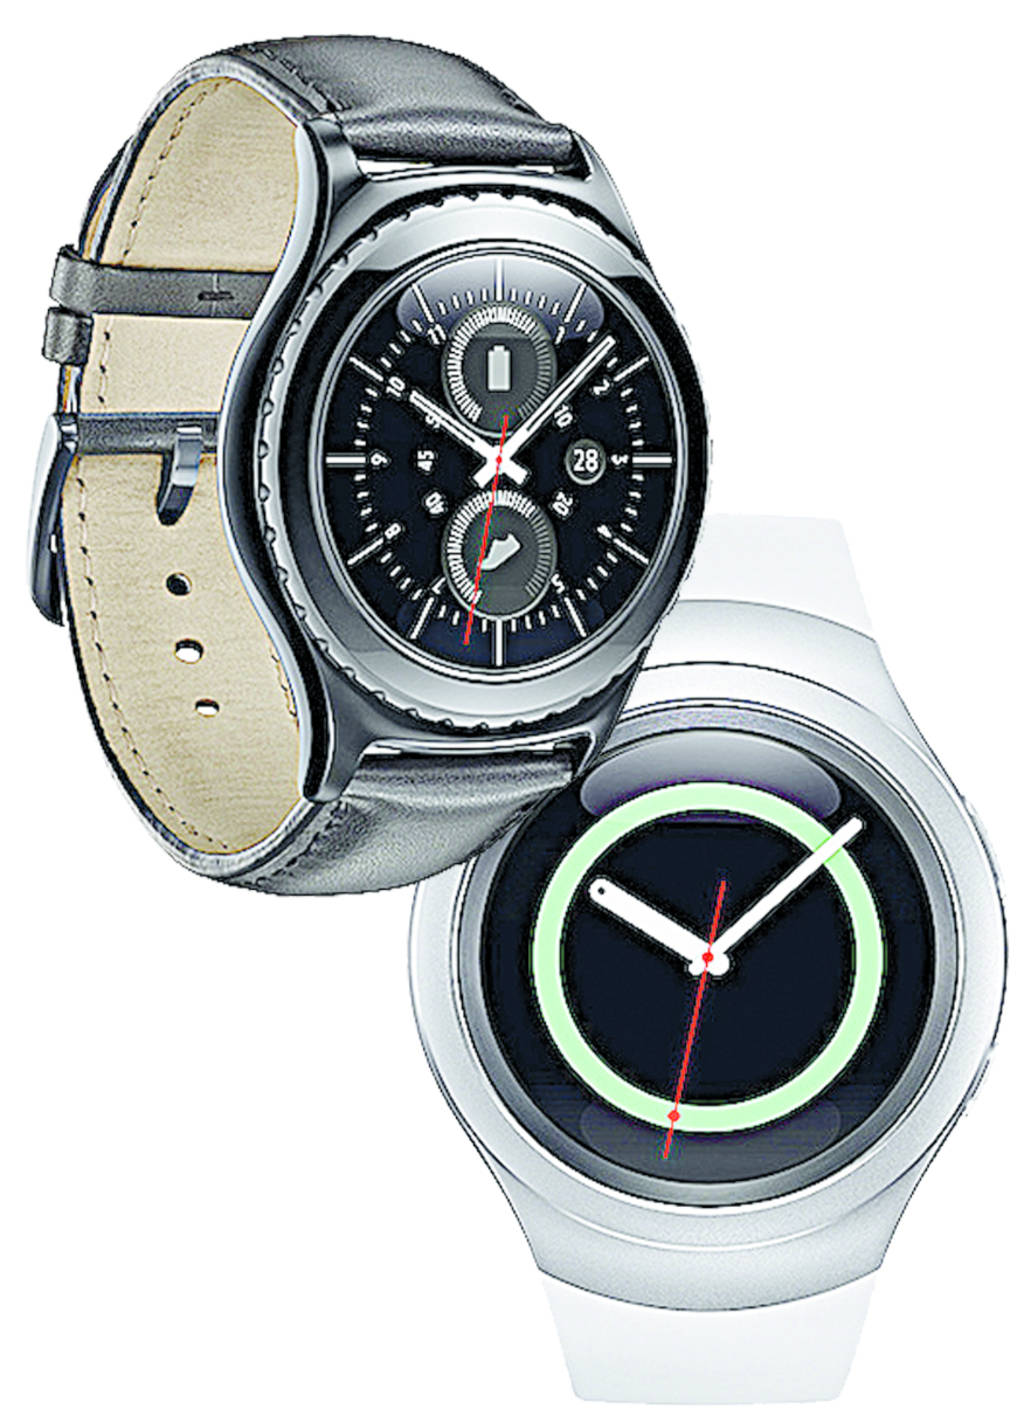 Nuevo reloj. Los modelos Gear S3 ya están a disposición para que cualquier persona pueda adquirirlo. 